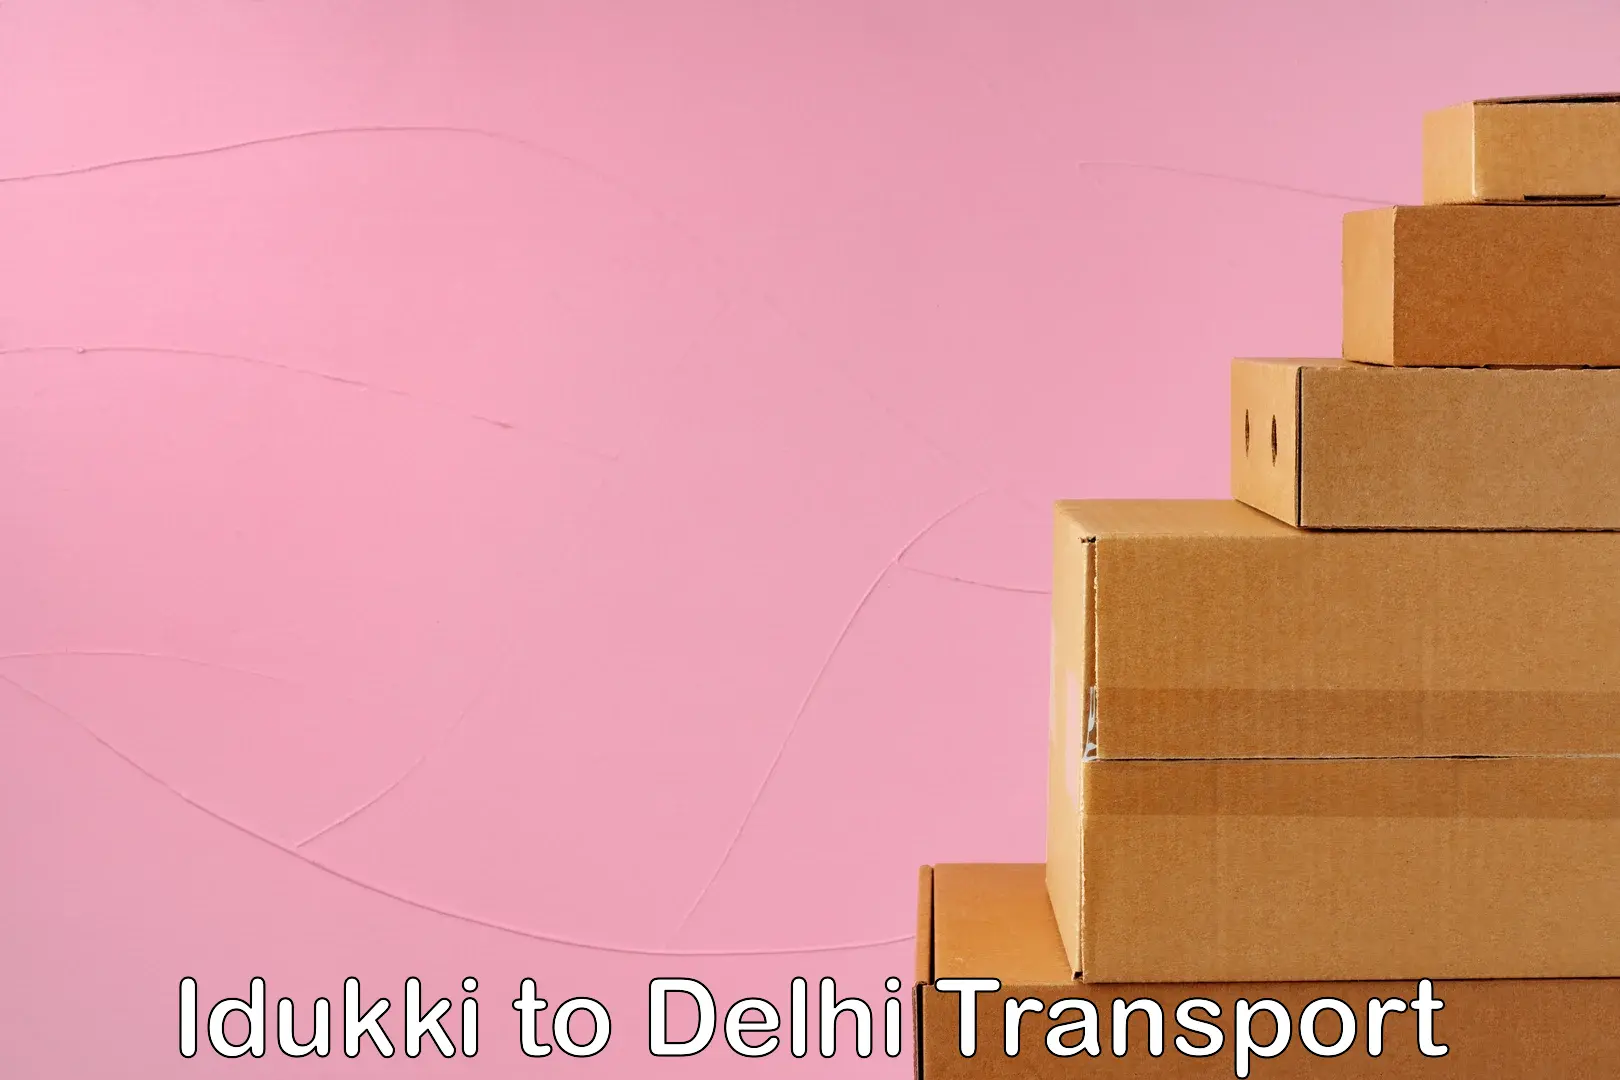 Air cargo transport services Idukki to IIT Delhi